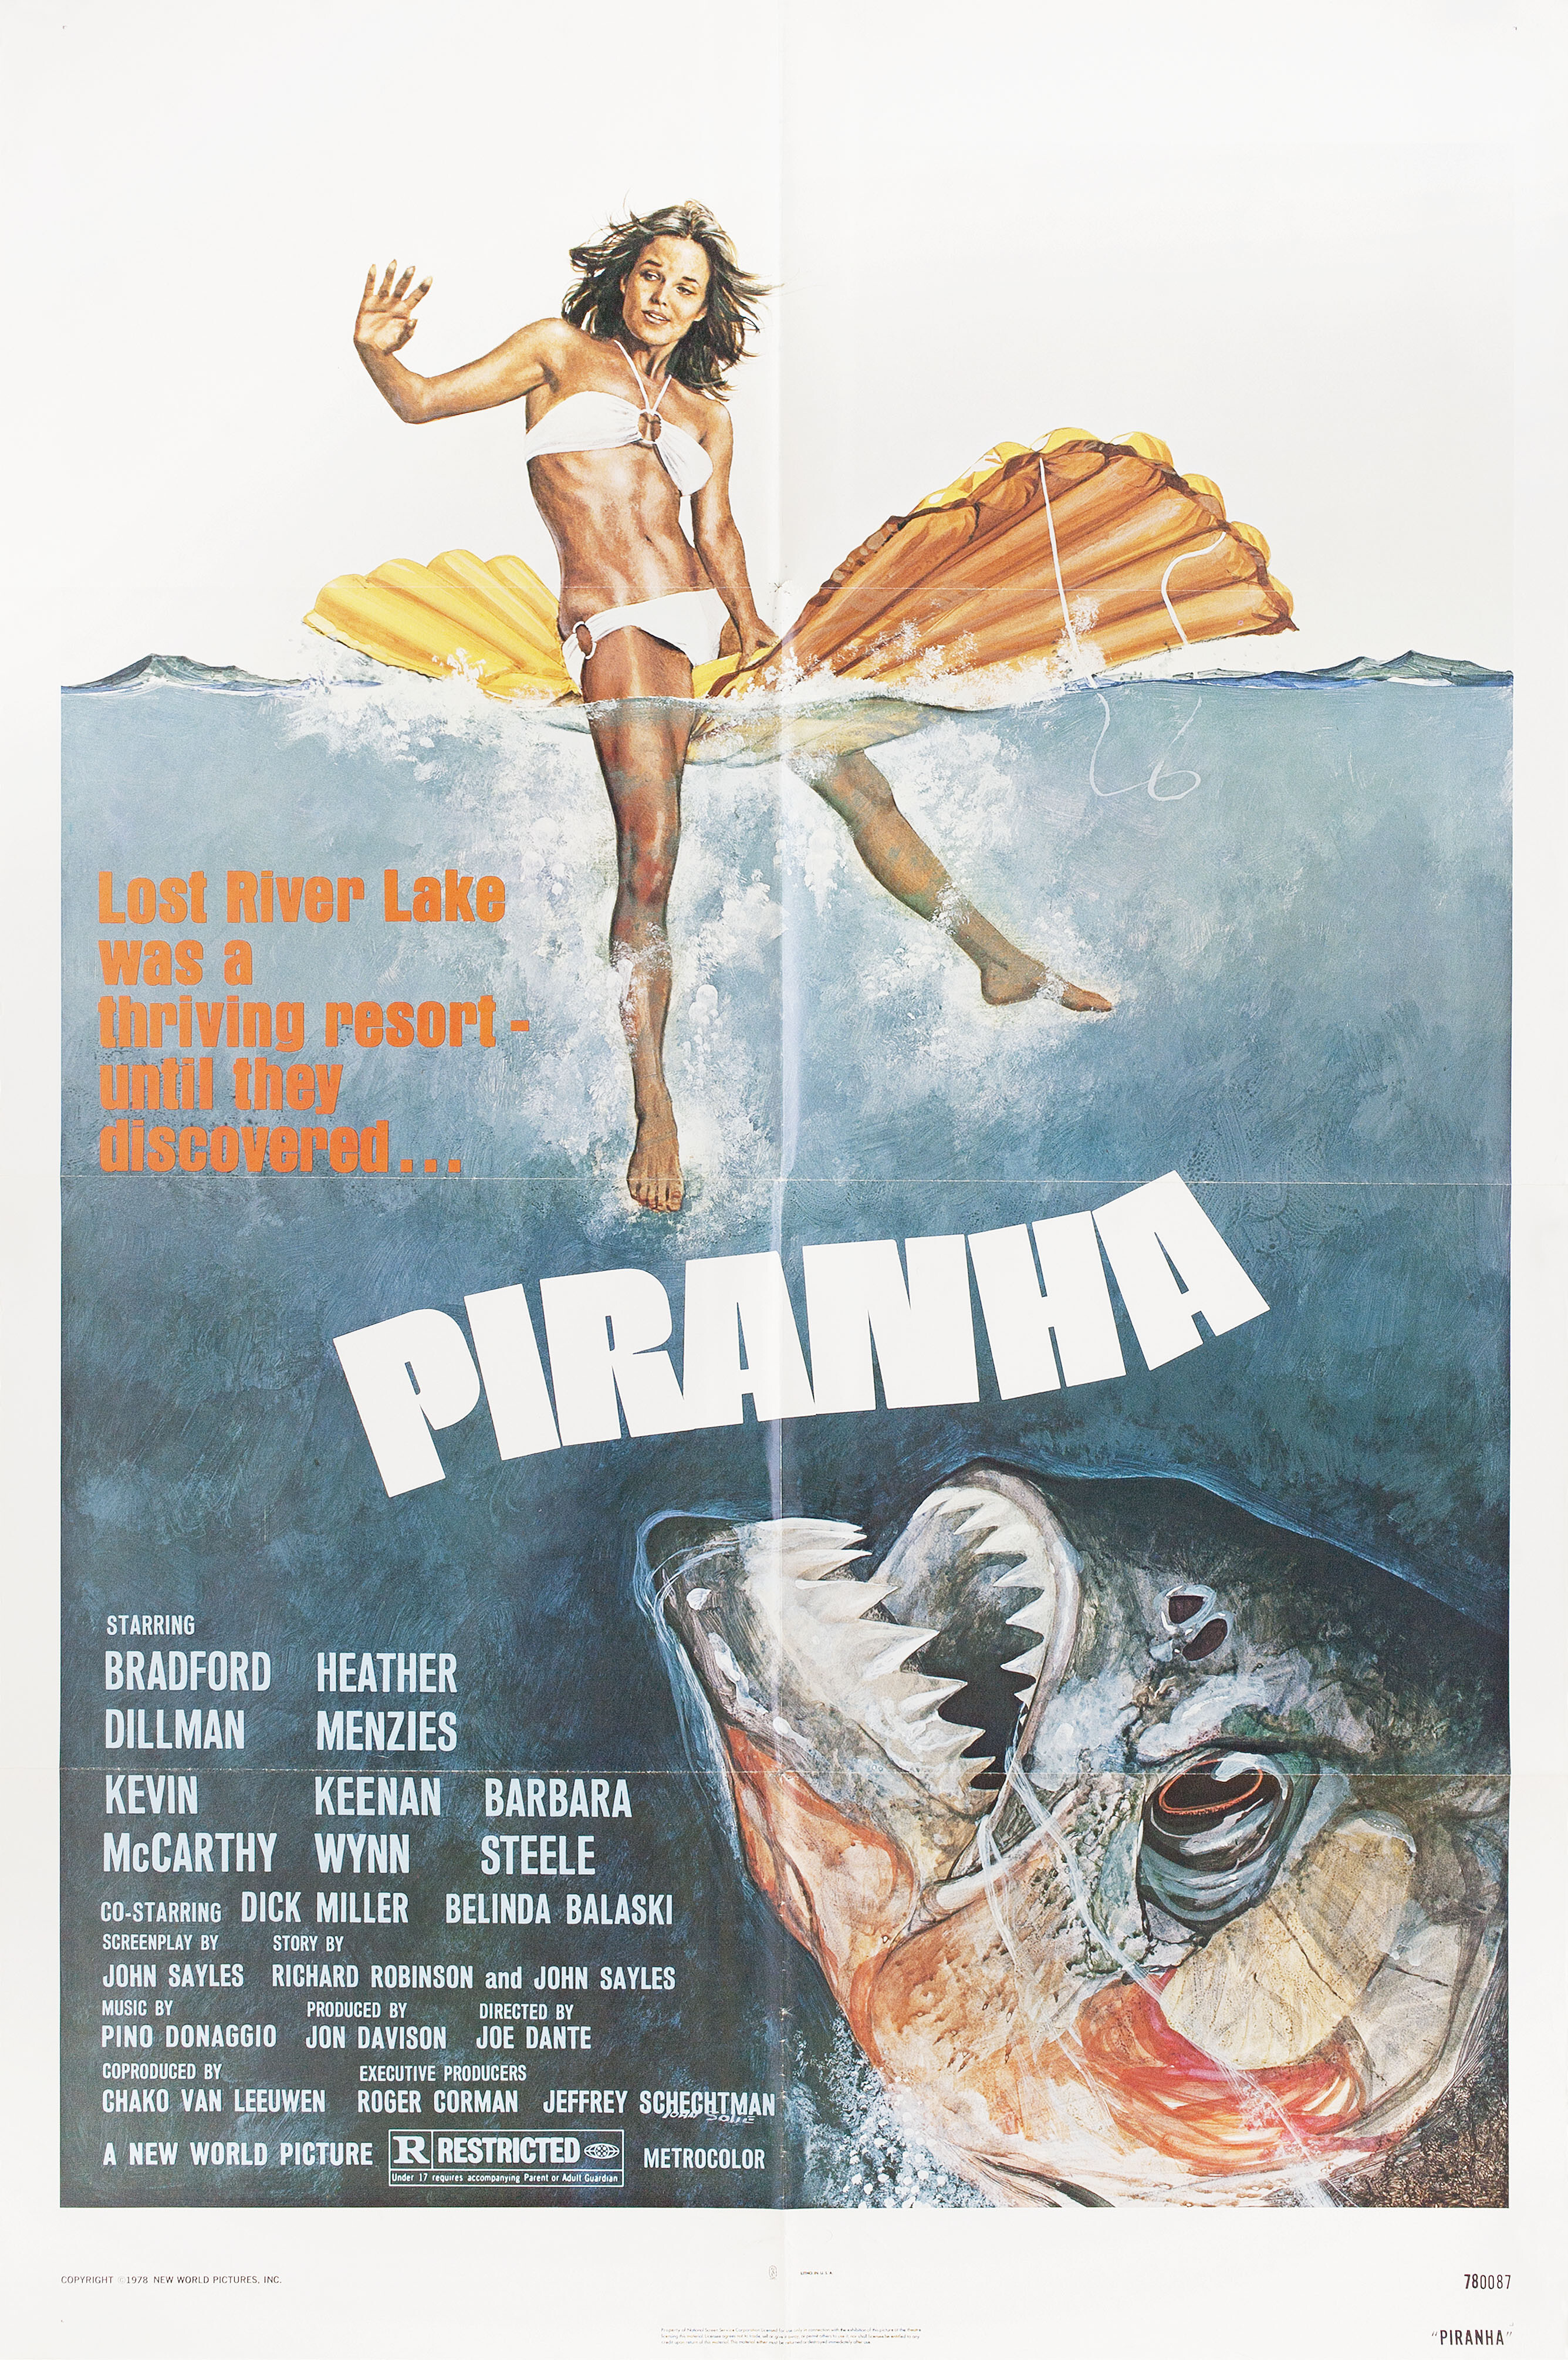 Пираньи (Piranha, 1978), режиссёр Джо Данте, американский постер к фильму, автор Джон Соли (ужасы, 1978 год)